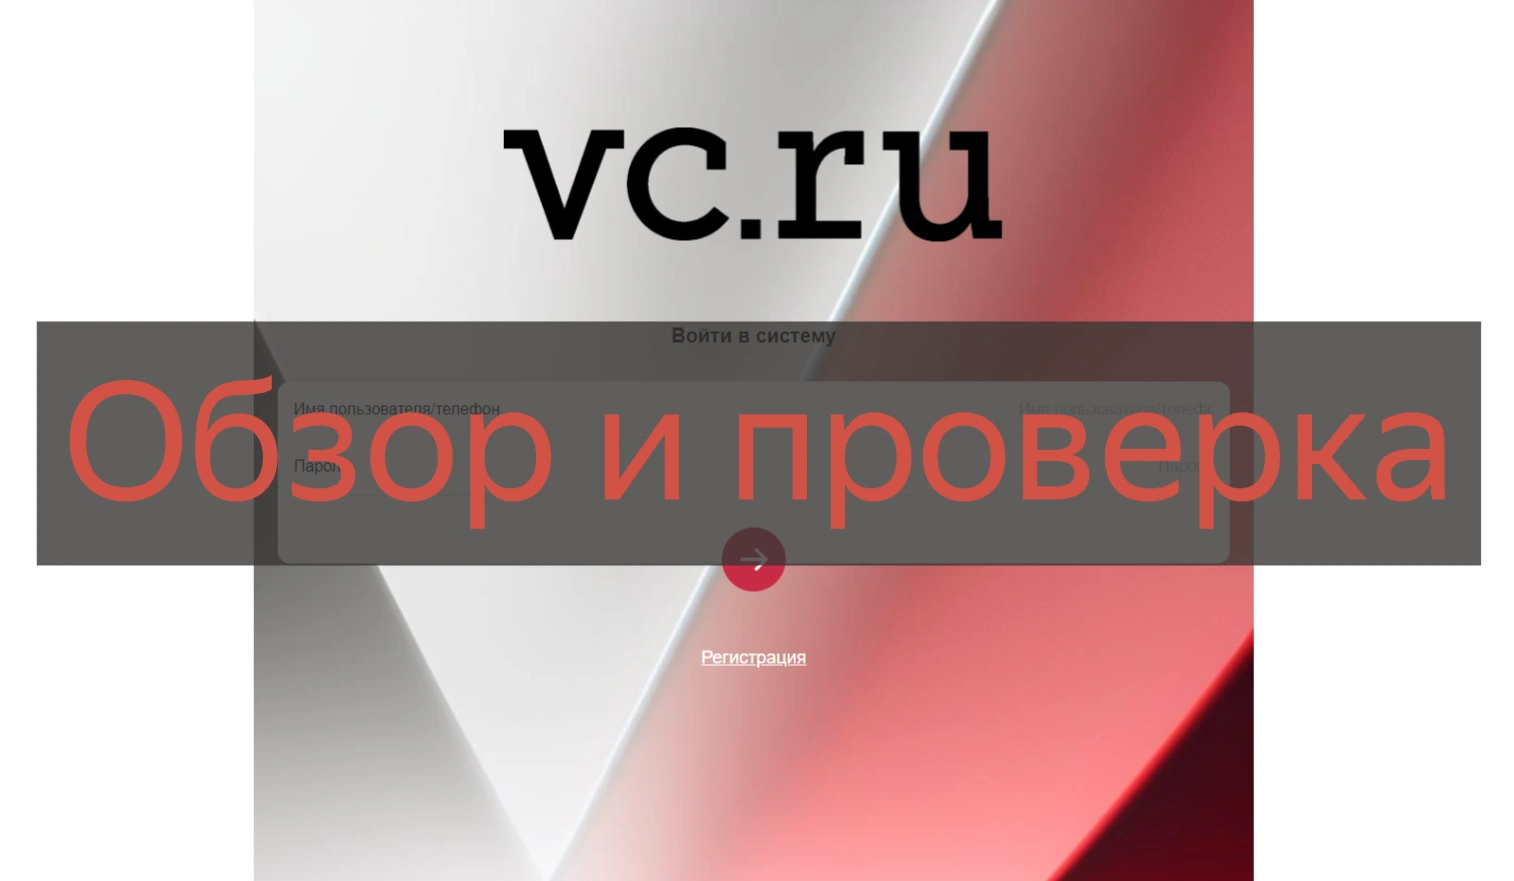 Отзывы о vc-rupros.com и vc-ruappsa.com - работа на VC.RU